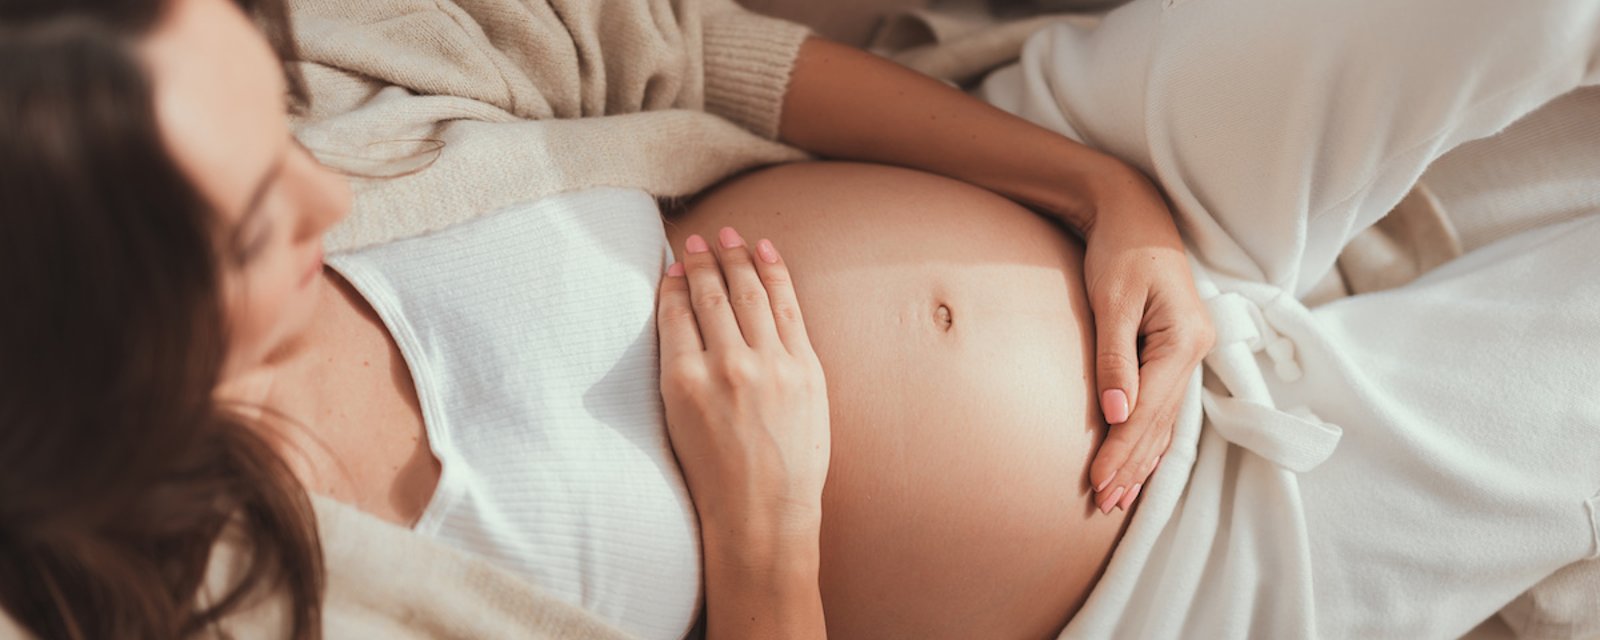 15 astuces pour se faciliter la vie pendant la grossesse